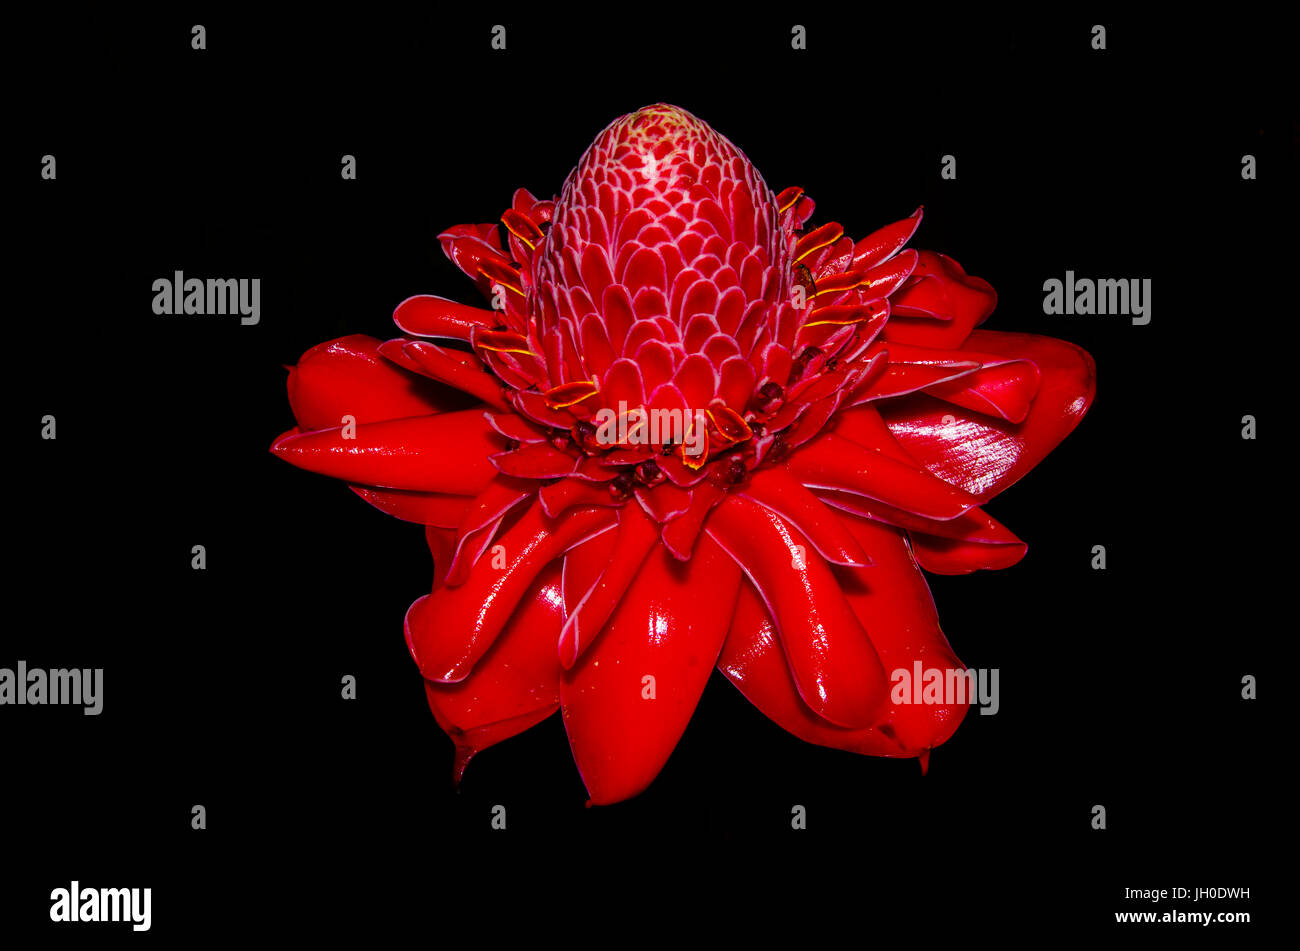 Red flower Etlingera Elatior also called ginger flower or torch ginger Stock Photo